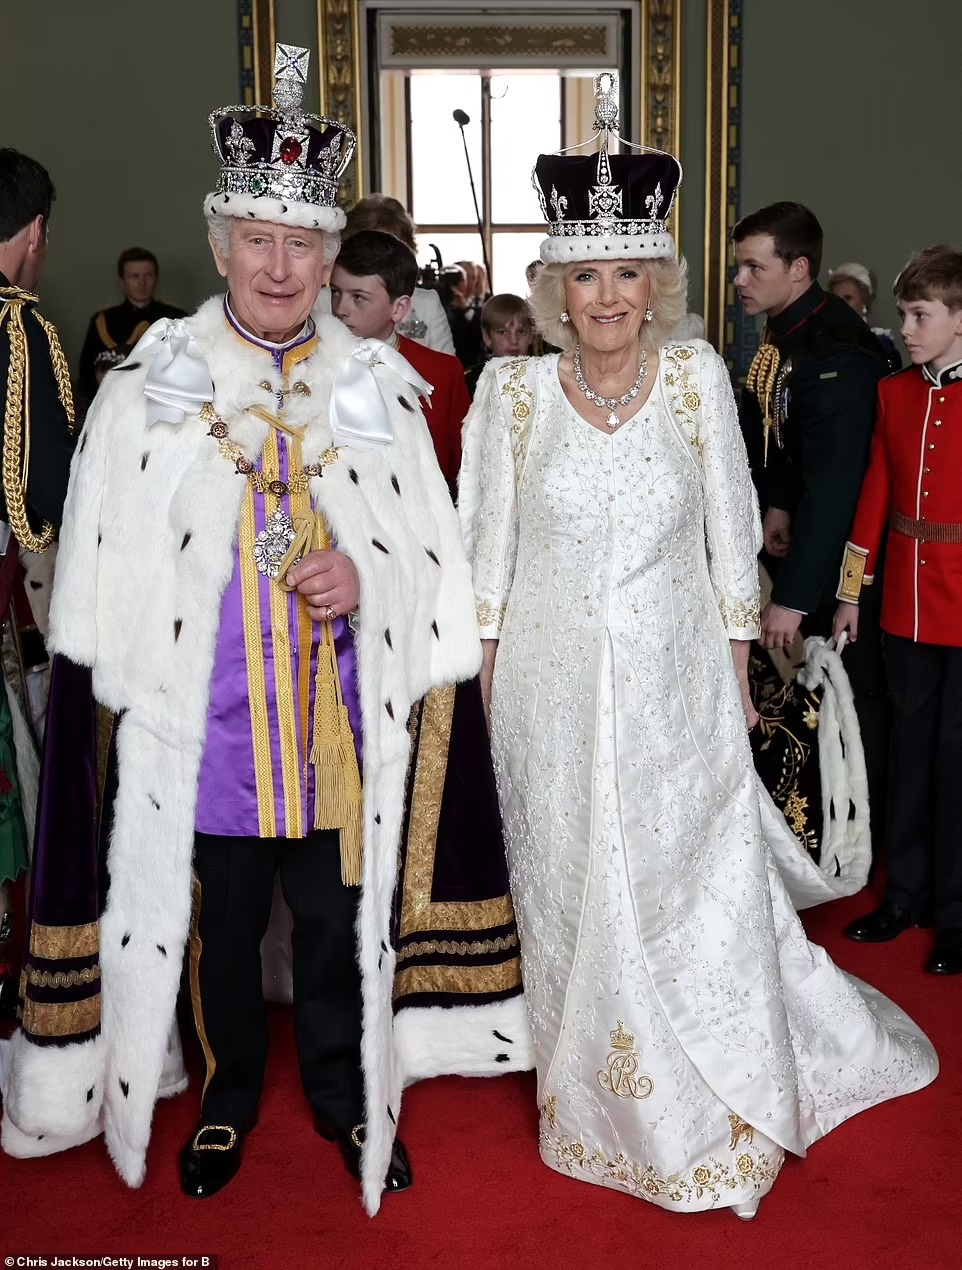 Chùm ảnh hậu trường hiếm hoi của Vua Charles và Vương hậu Camilla trên ban công Cung điện Buckingham, những góc nhìn chưa từng thấy - Ảnh 4.